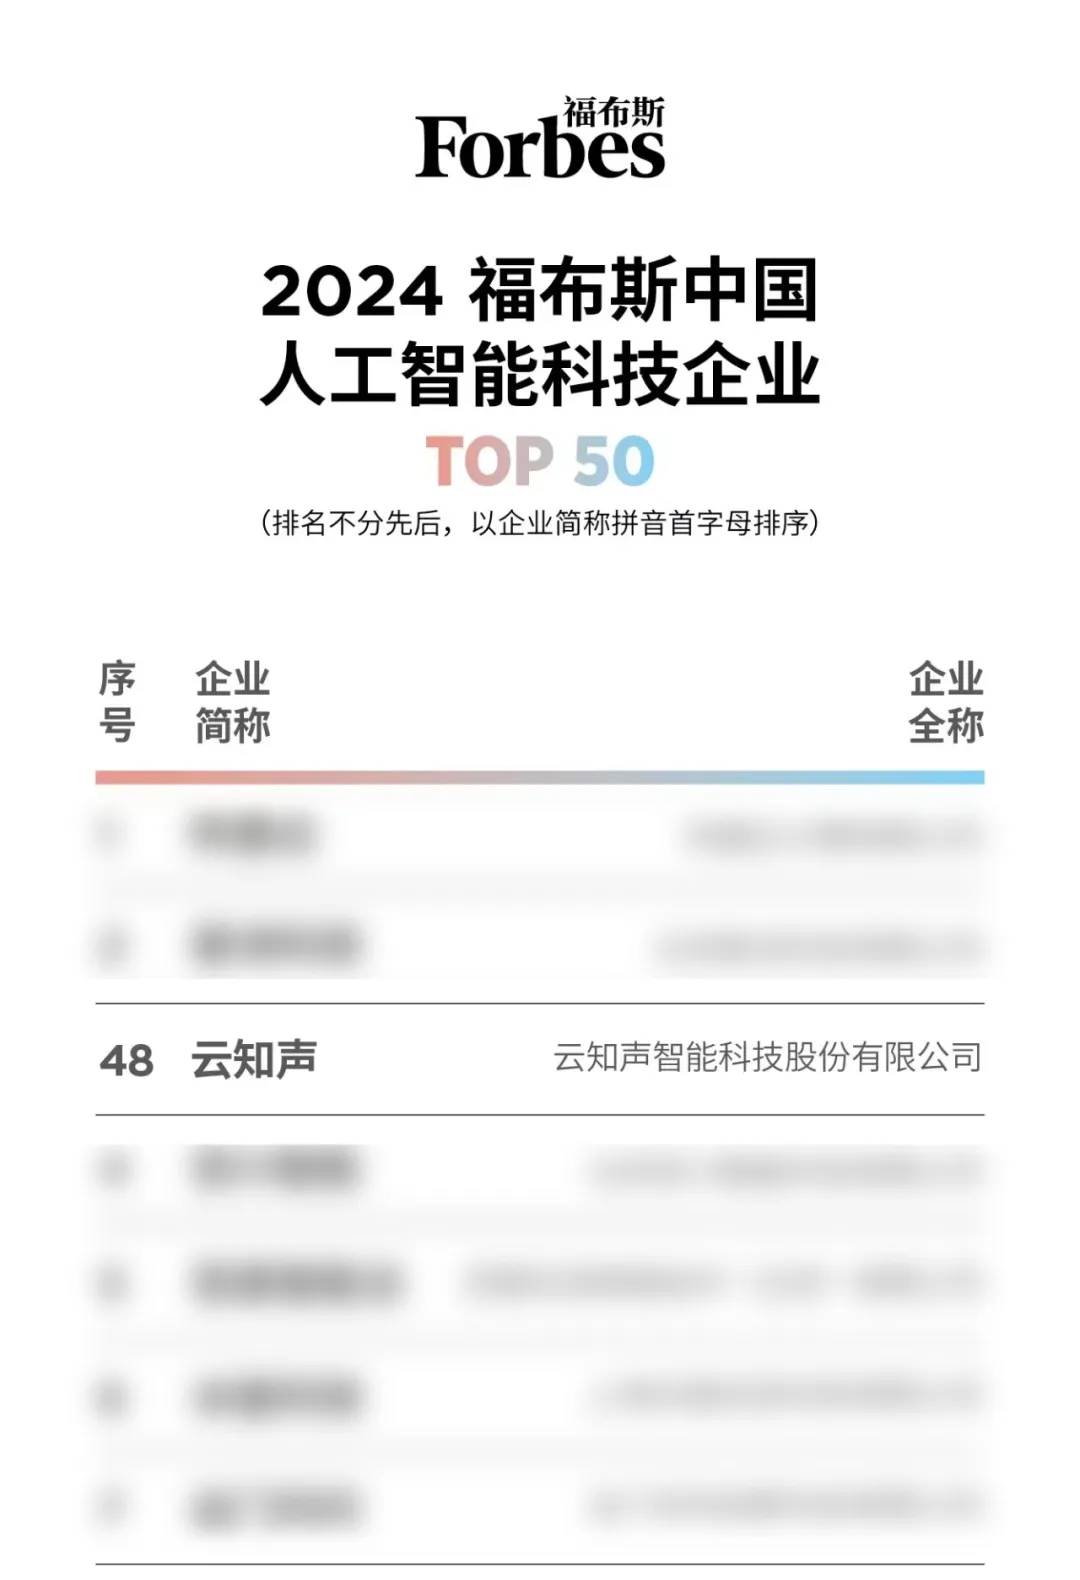 云知声荣登“2024福布斯中国人工智能科技企业TOP 50”榜单